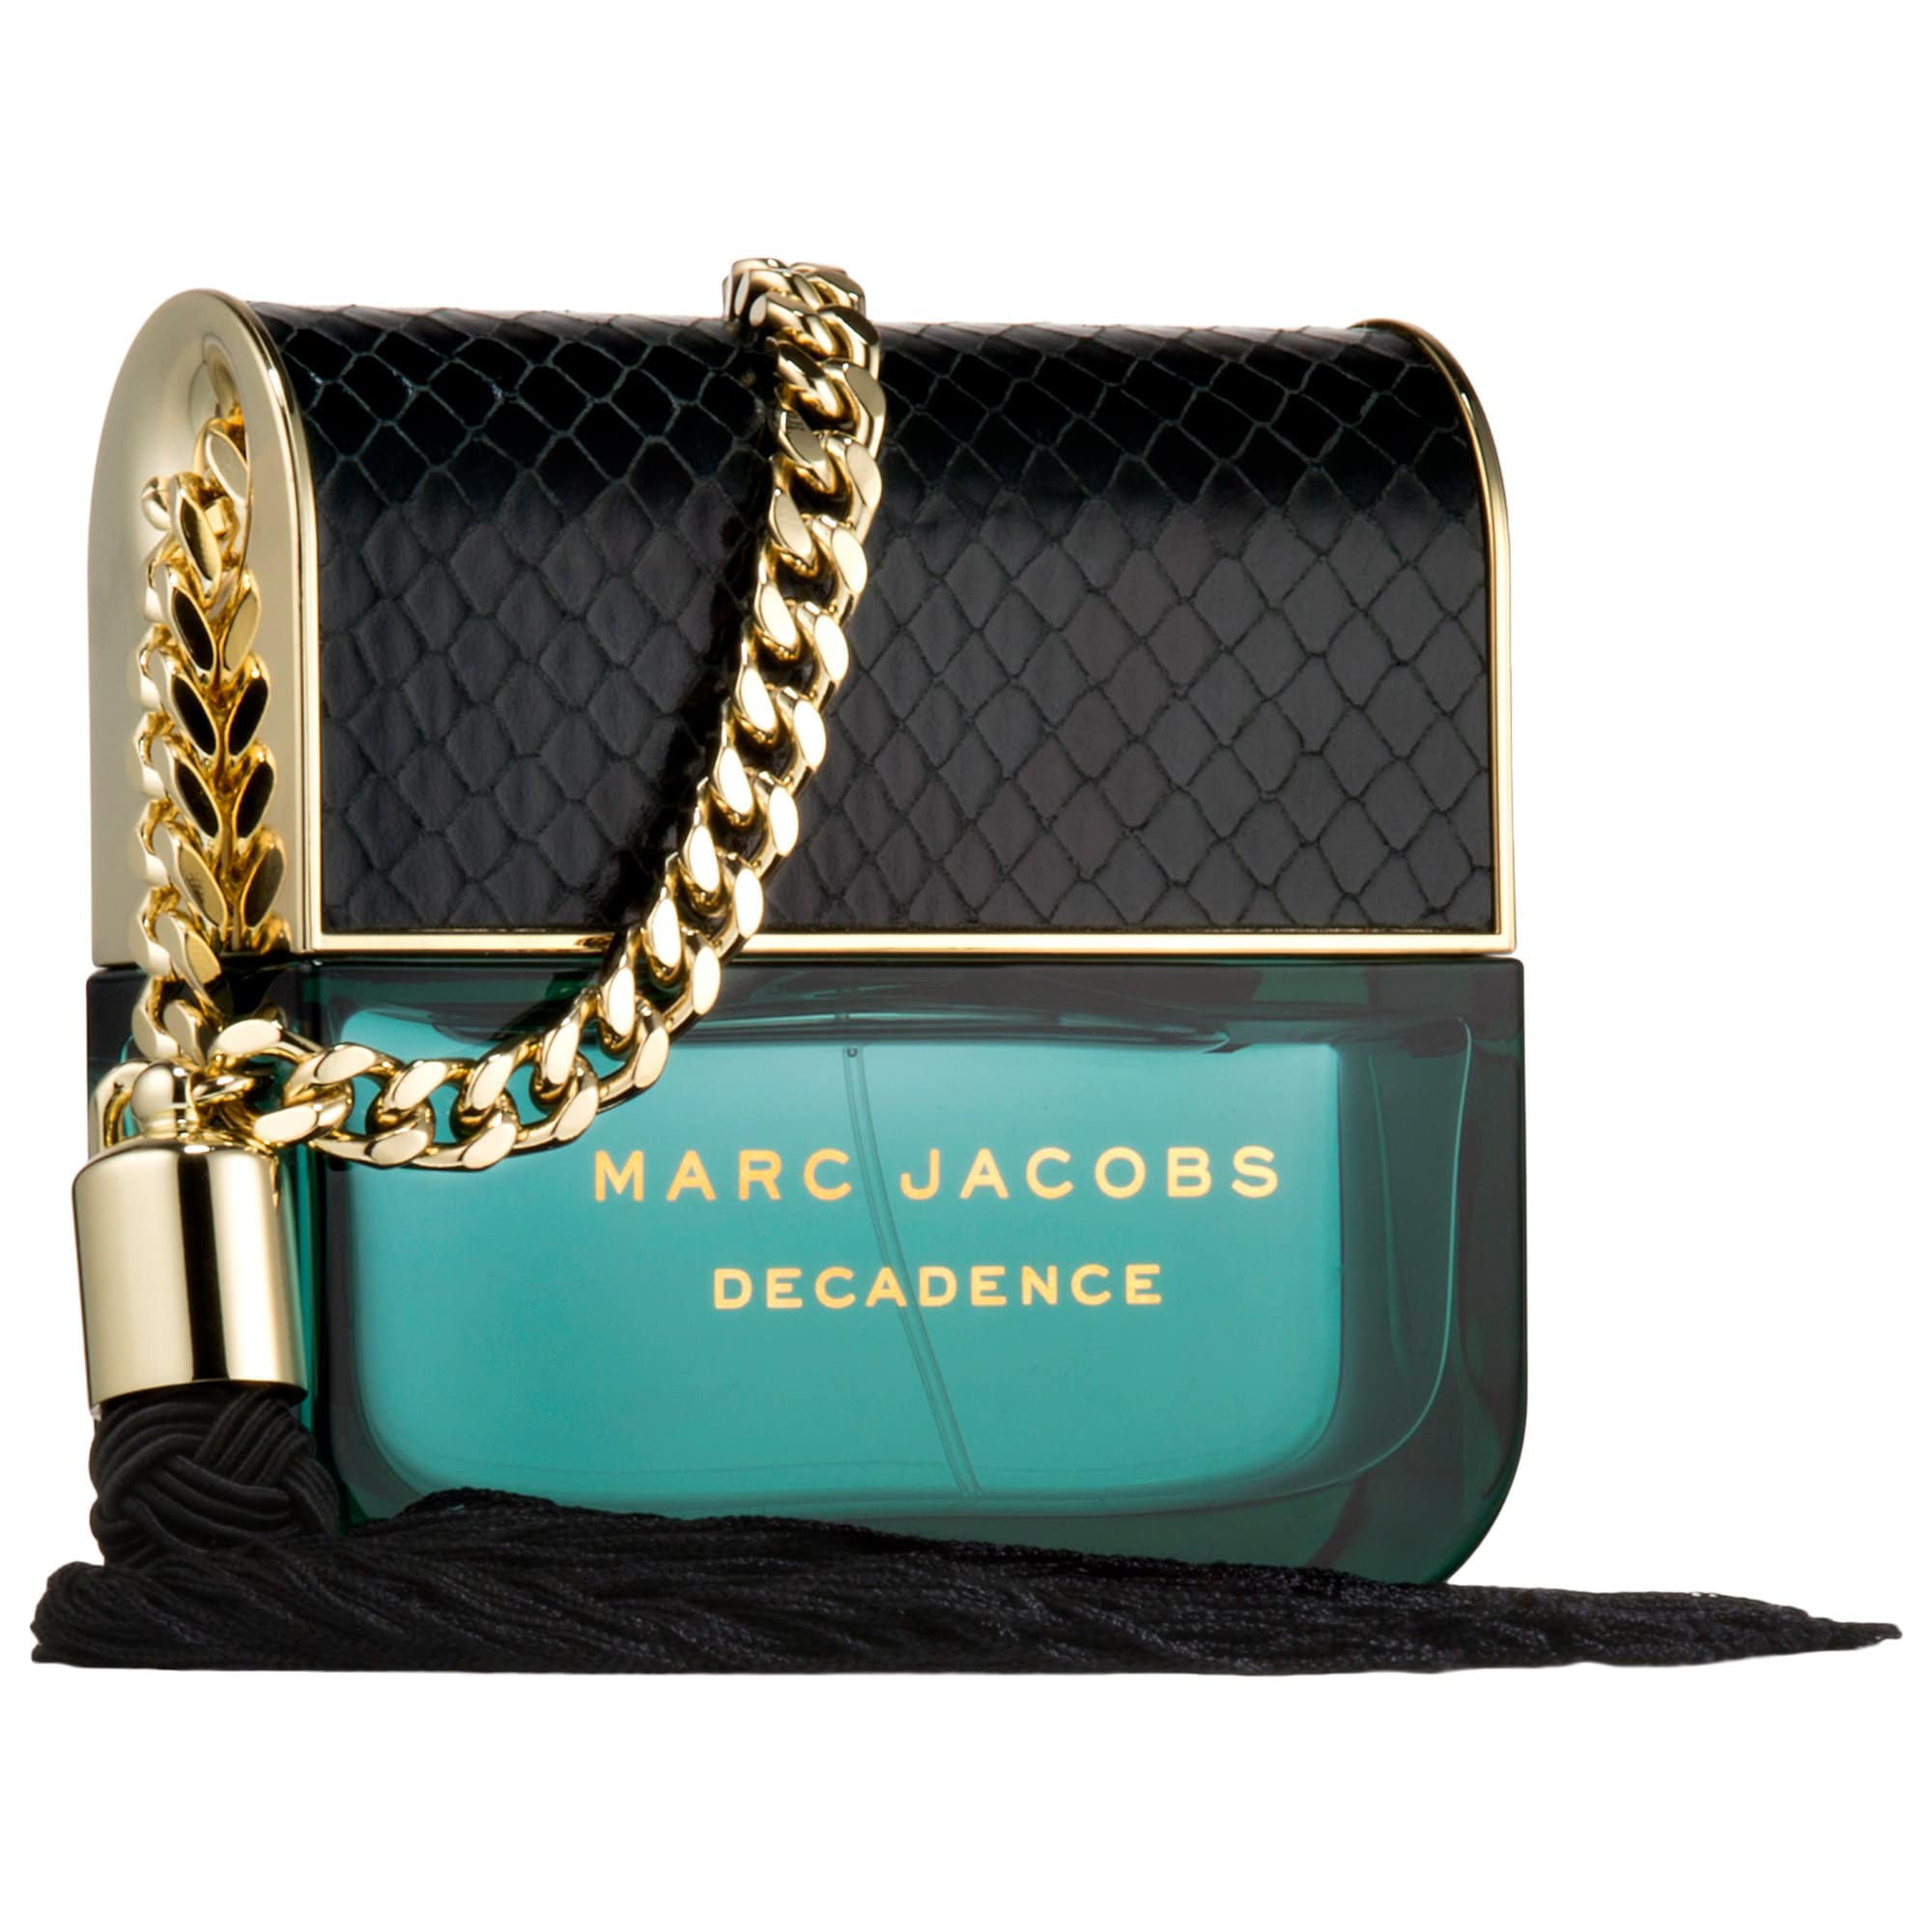 Marc Jacobs - Marc Jacobs Decadence 3.4 oz Eau de Parfum Spray for Women -  Walmart.com